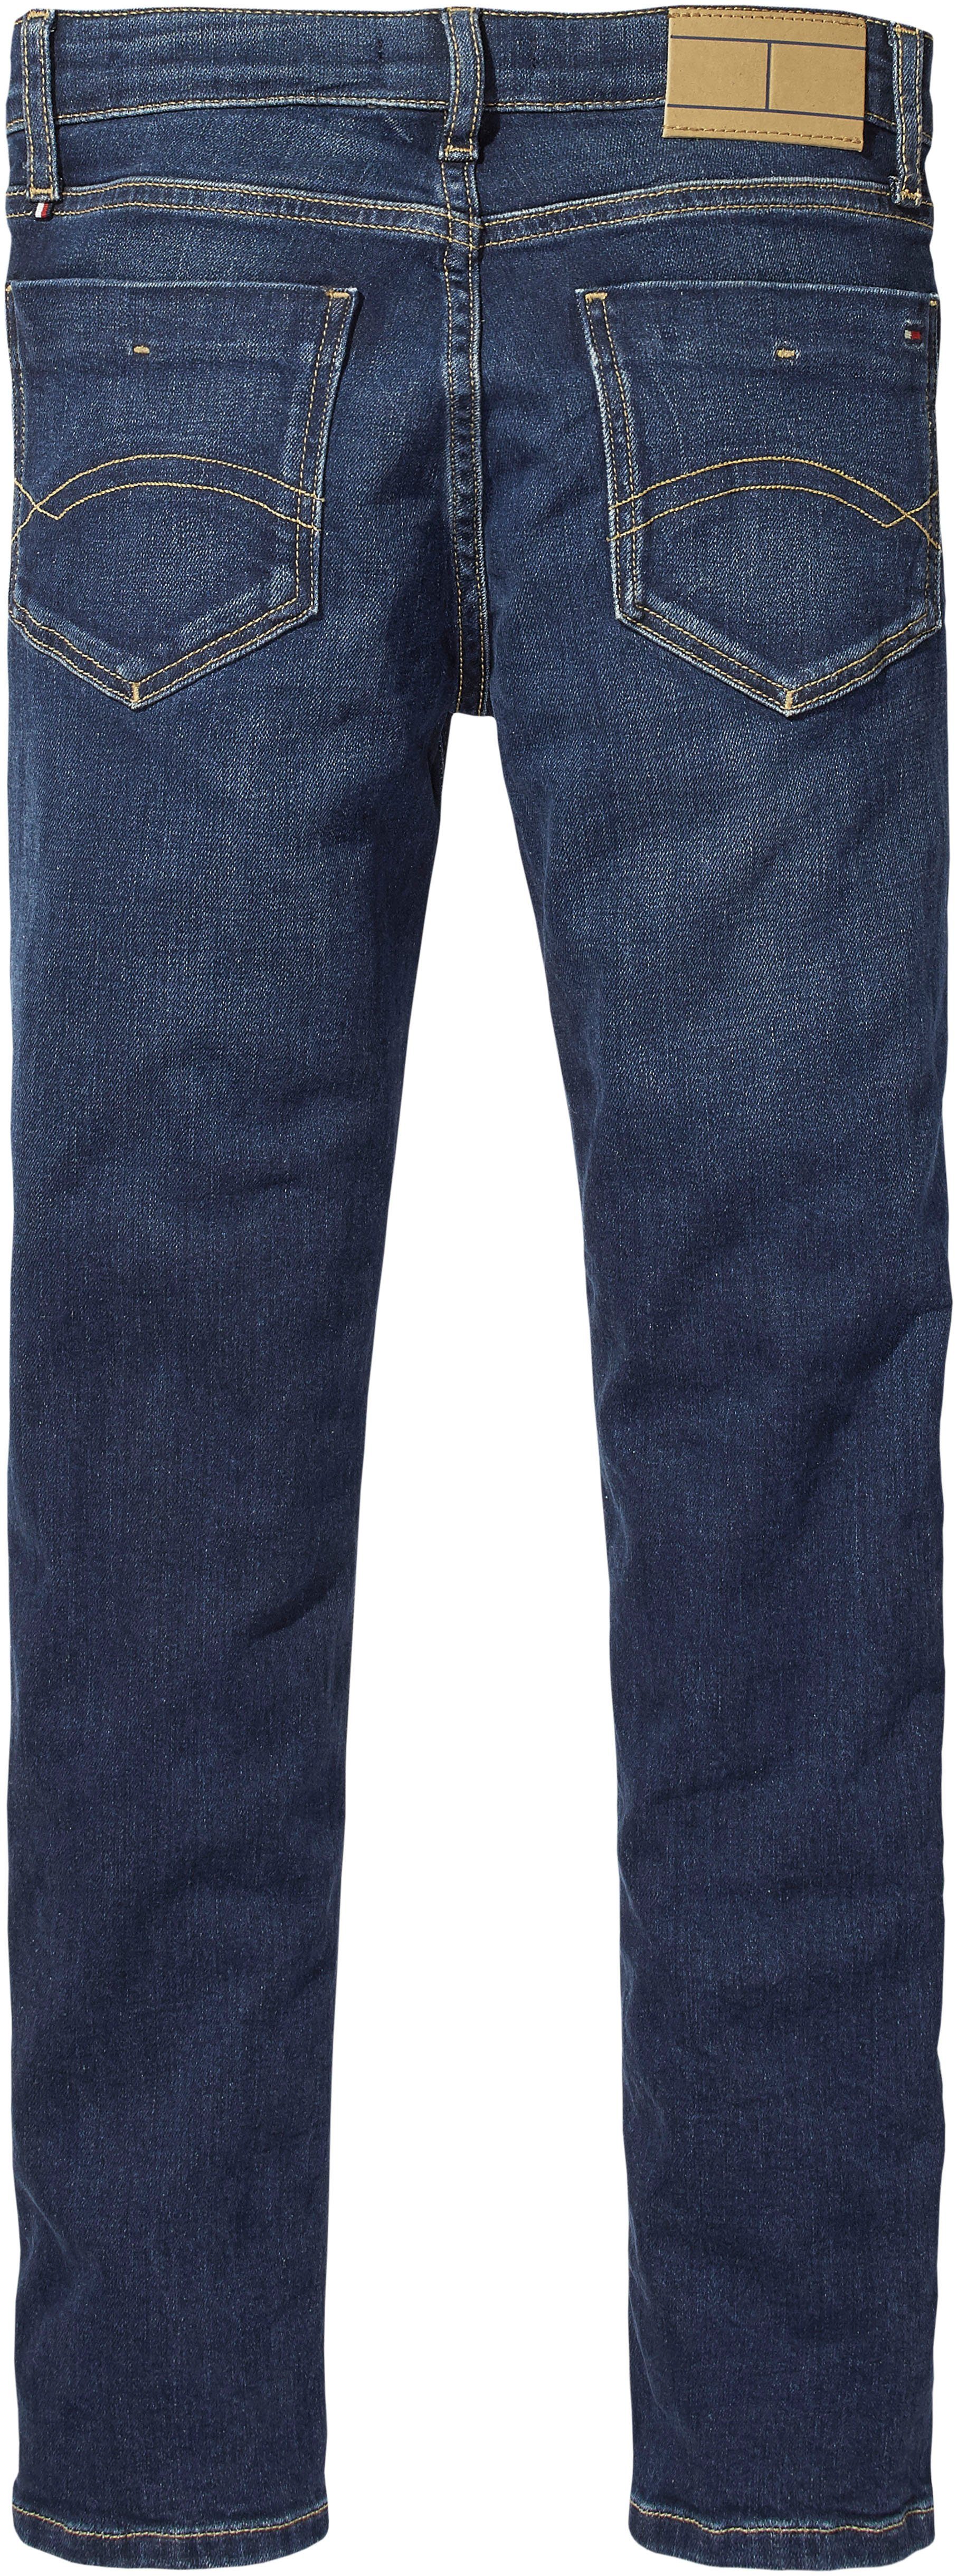 SCANTON Stretch-Jeans Hilfiger Tommy DARK